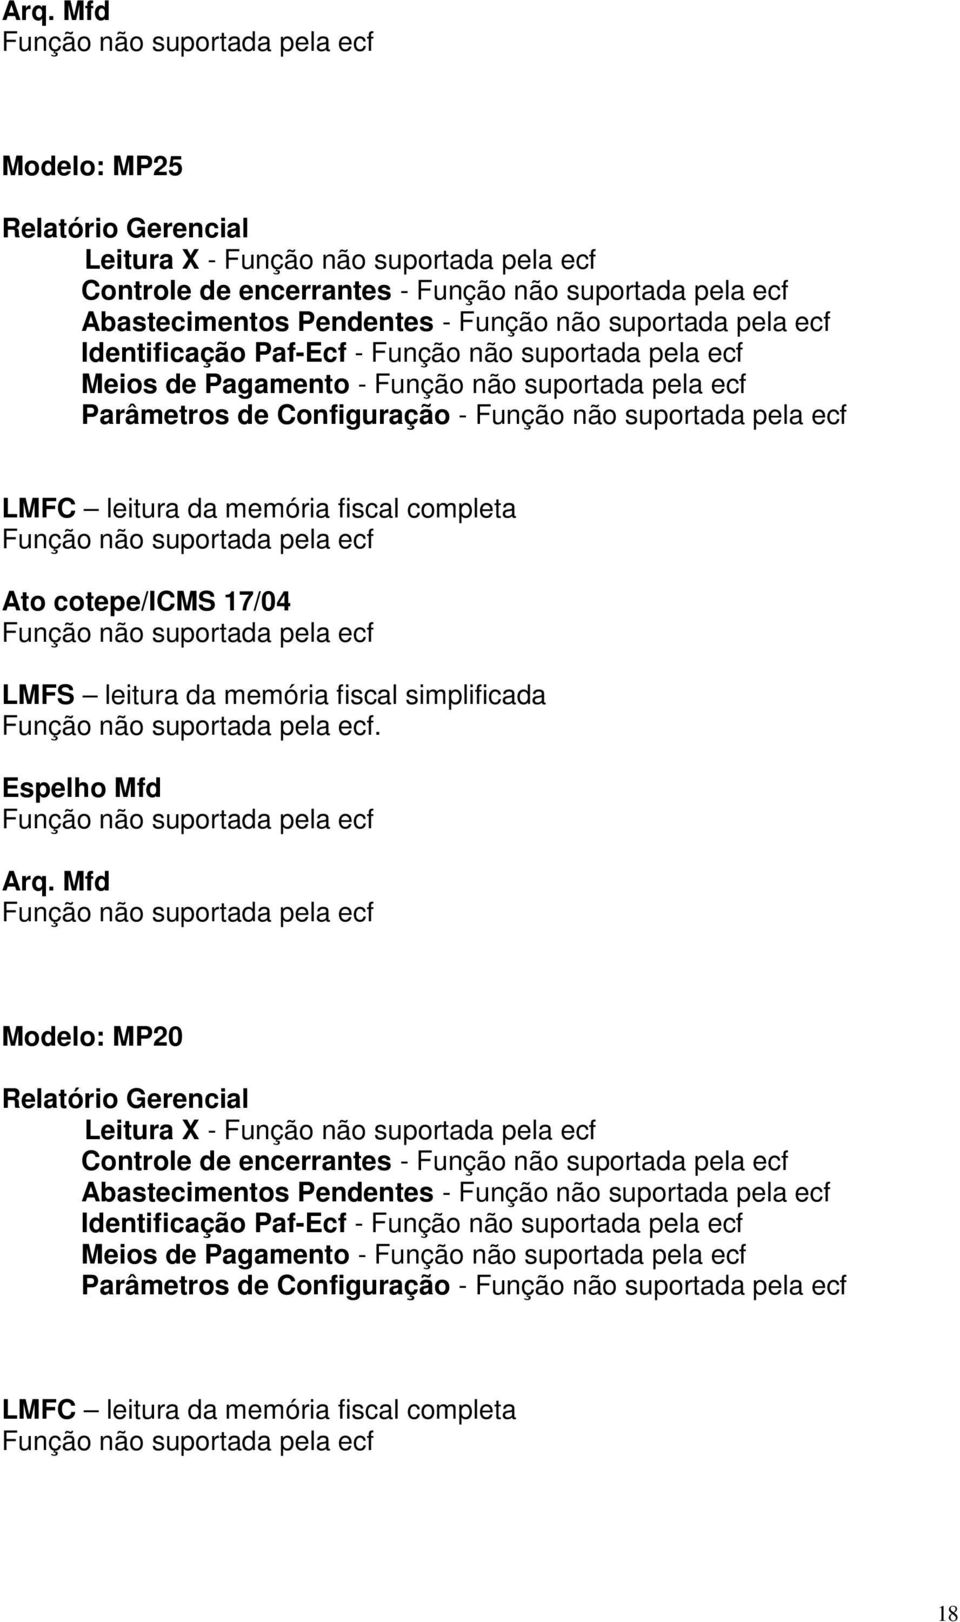 Modelo: MP20 Relatório Gerencial Leitura X - Controle de encerrantes - Abastecimentos